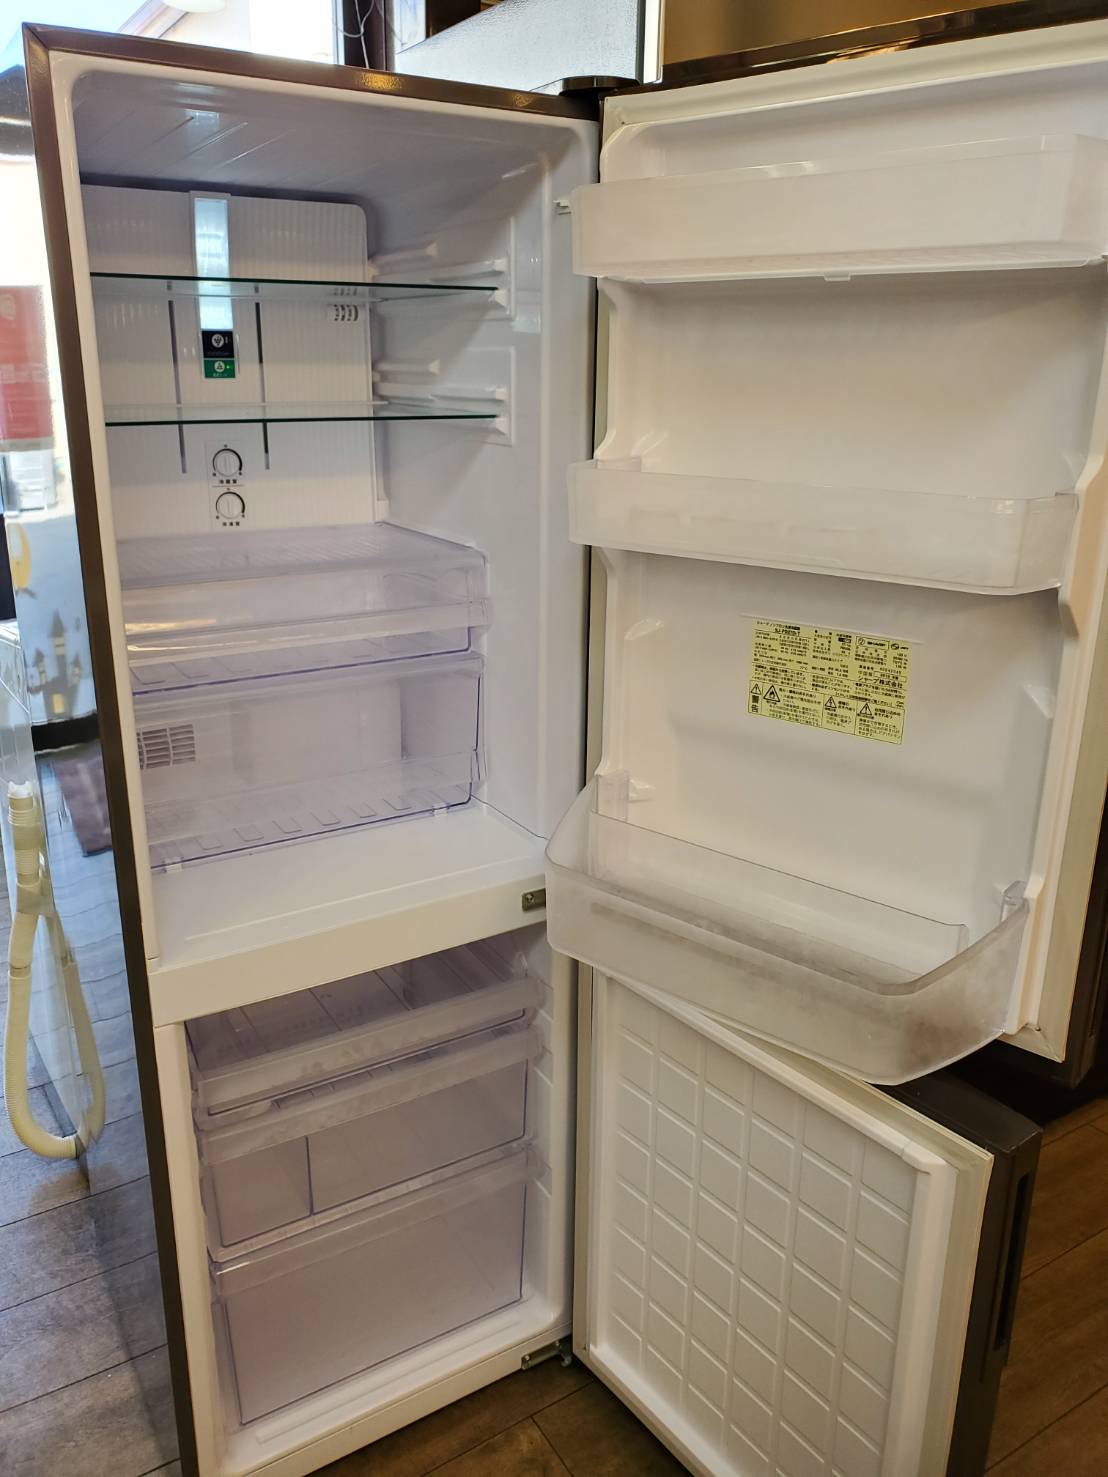 ☆SHARP シャープ 271L 2ドア 冷蔵庫 2018年製 美品 冷凍冷蔵庫 買取しました☆ | 愛知と岐阜のリサイクルショップ 再良市場